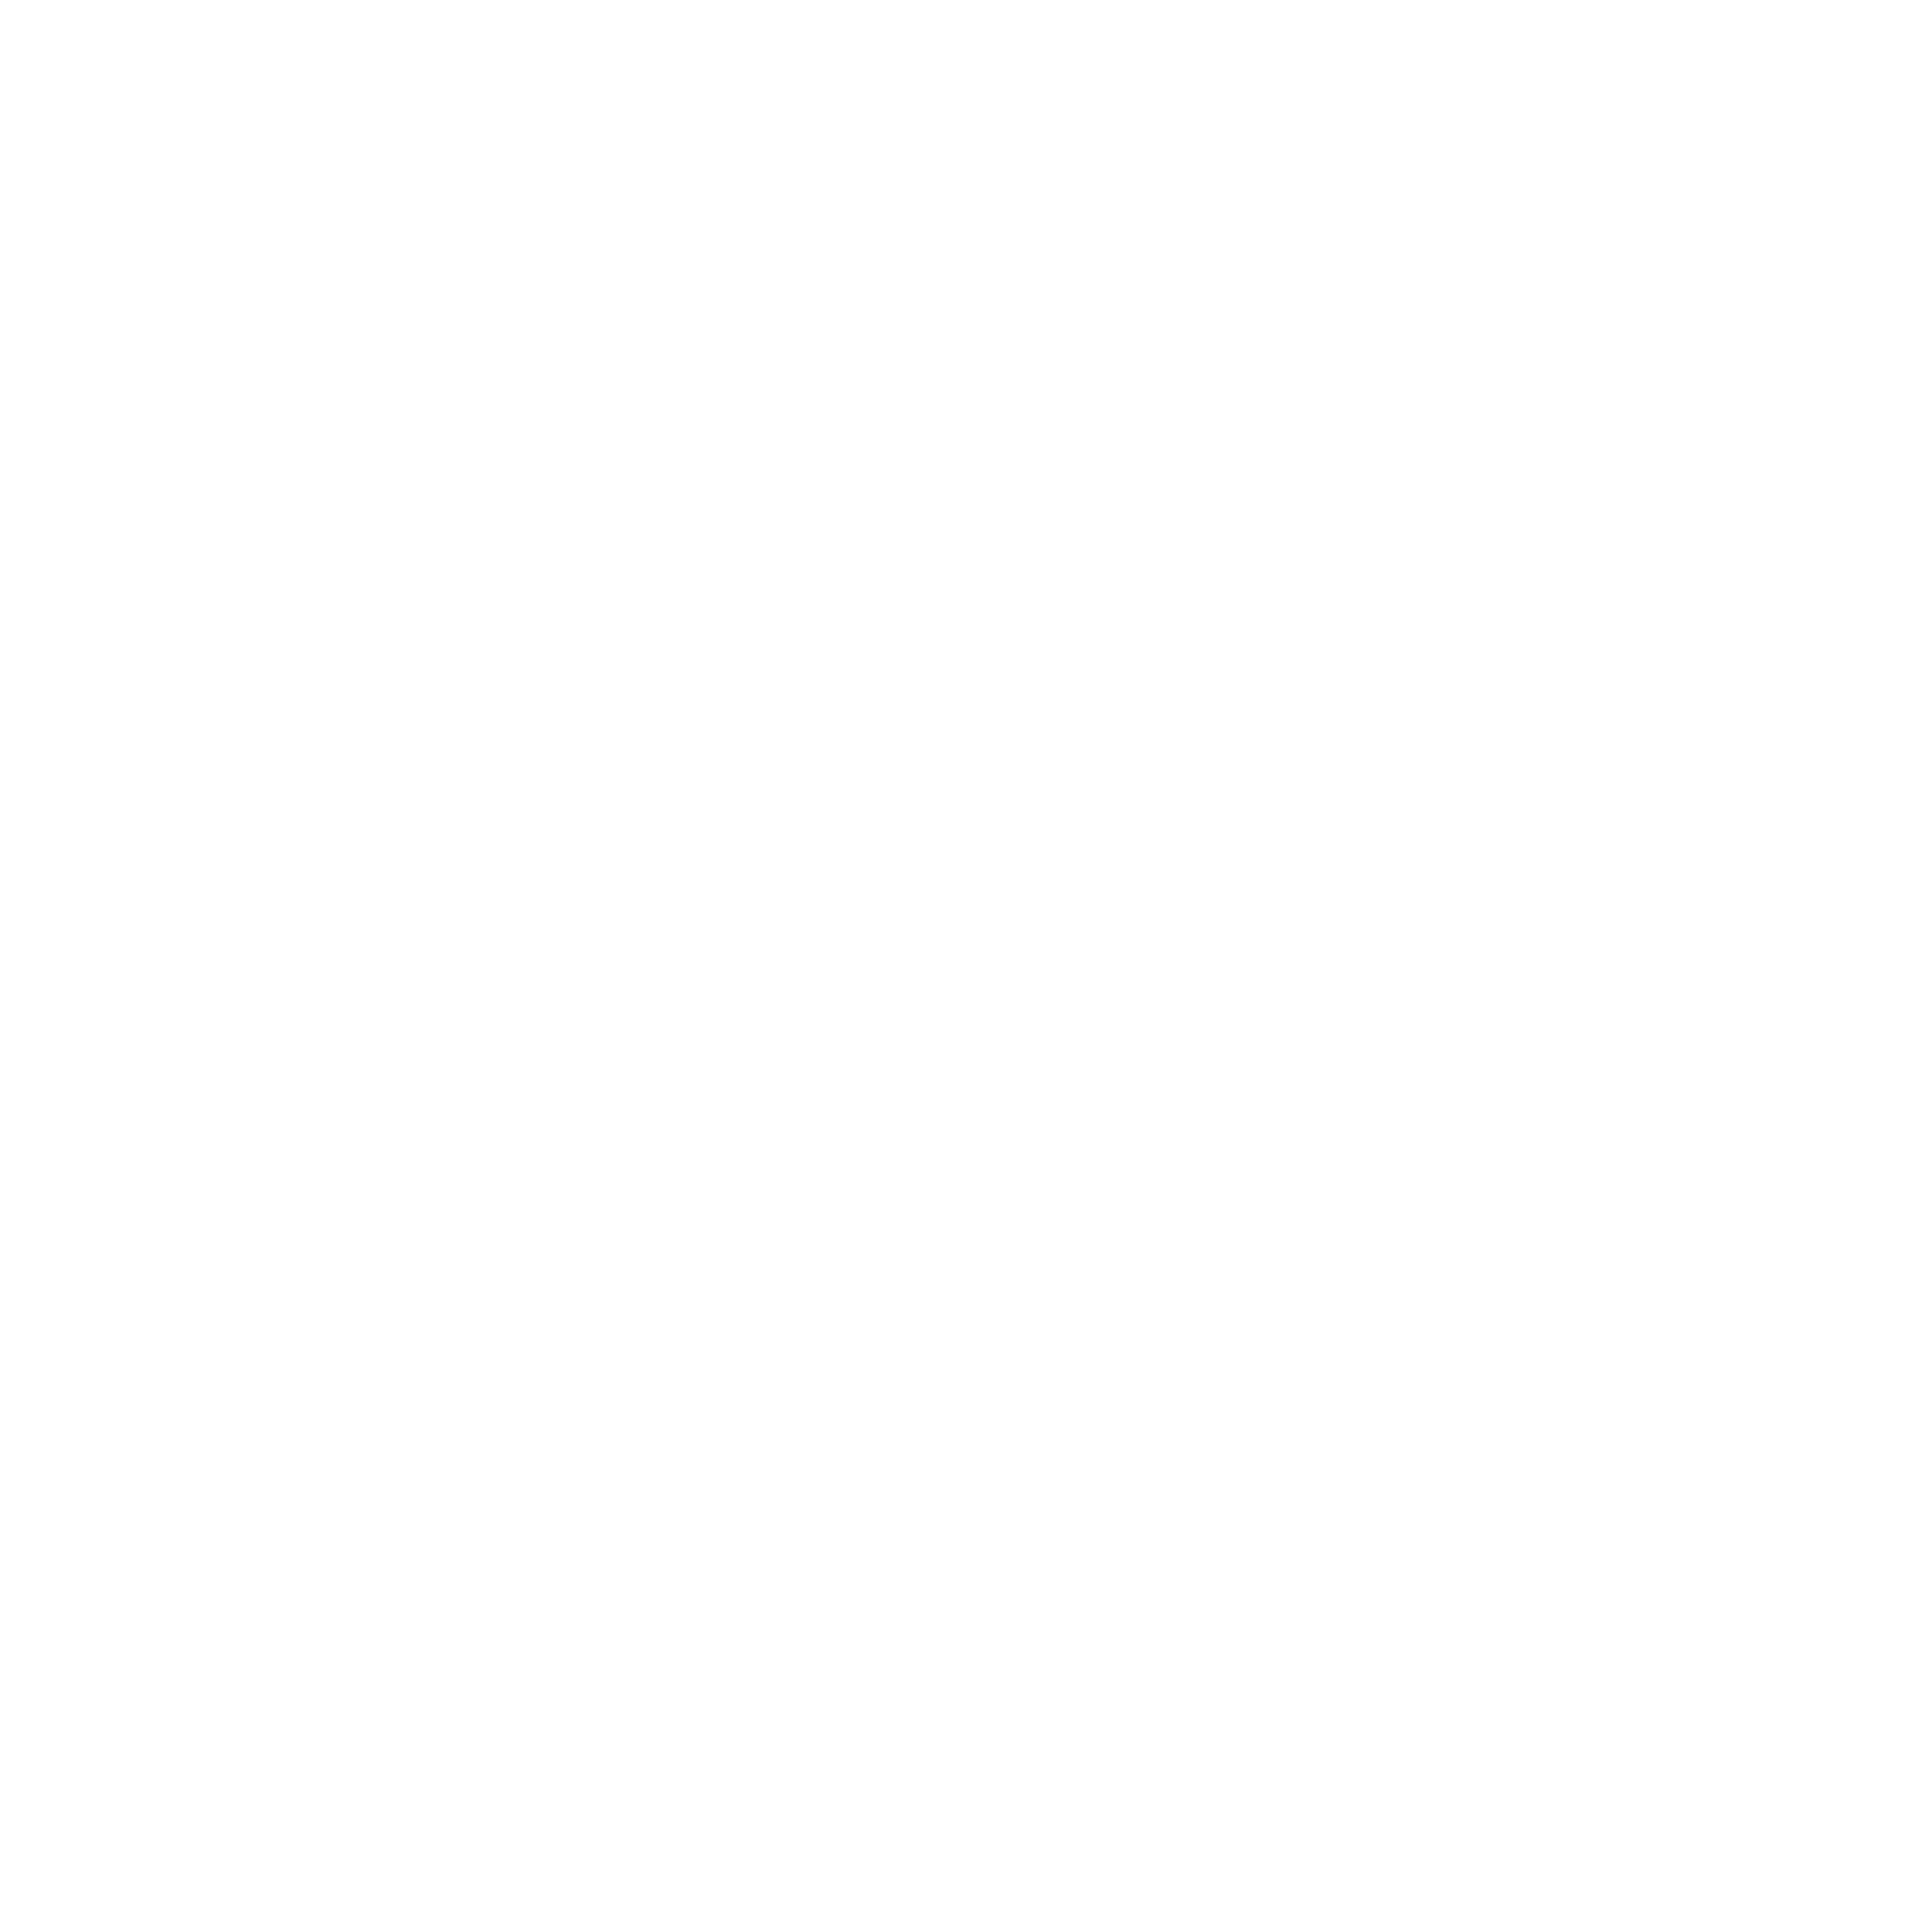 Hasura